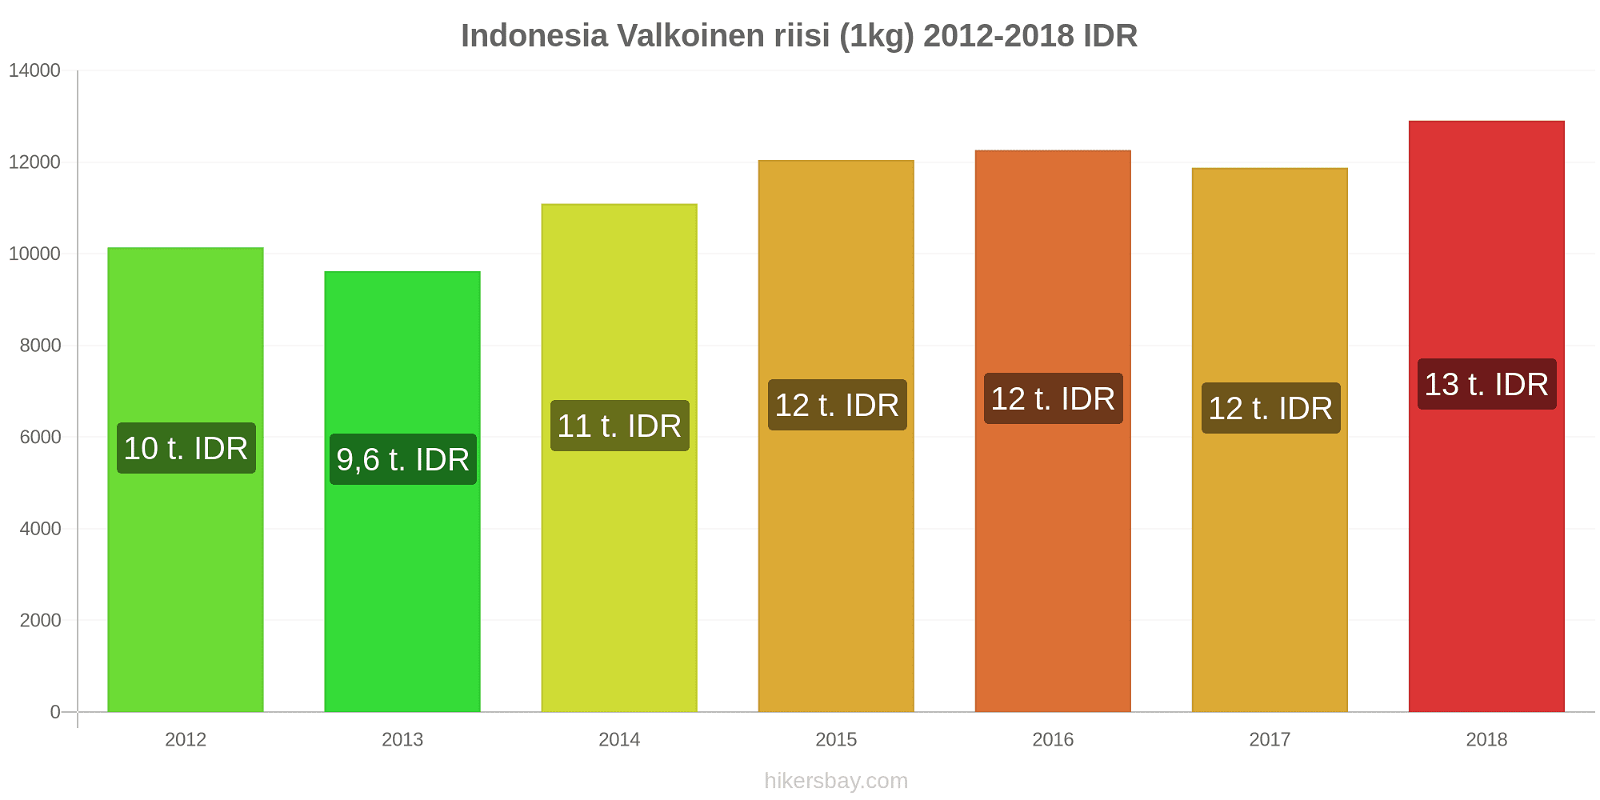 Indonesia hintojen muutokset Valkoinen riisi (1kg) hikersbay.com